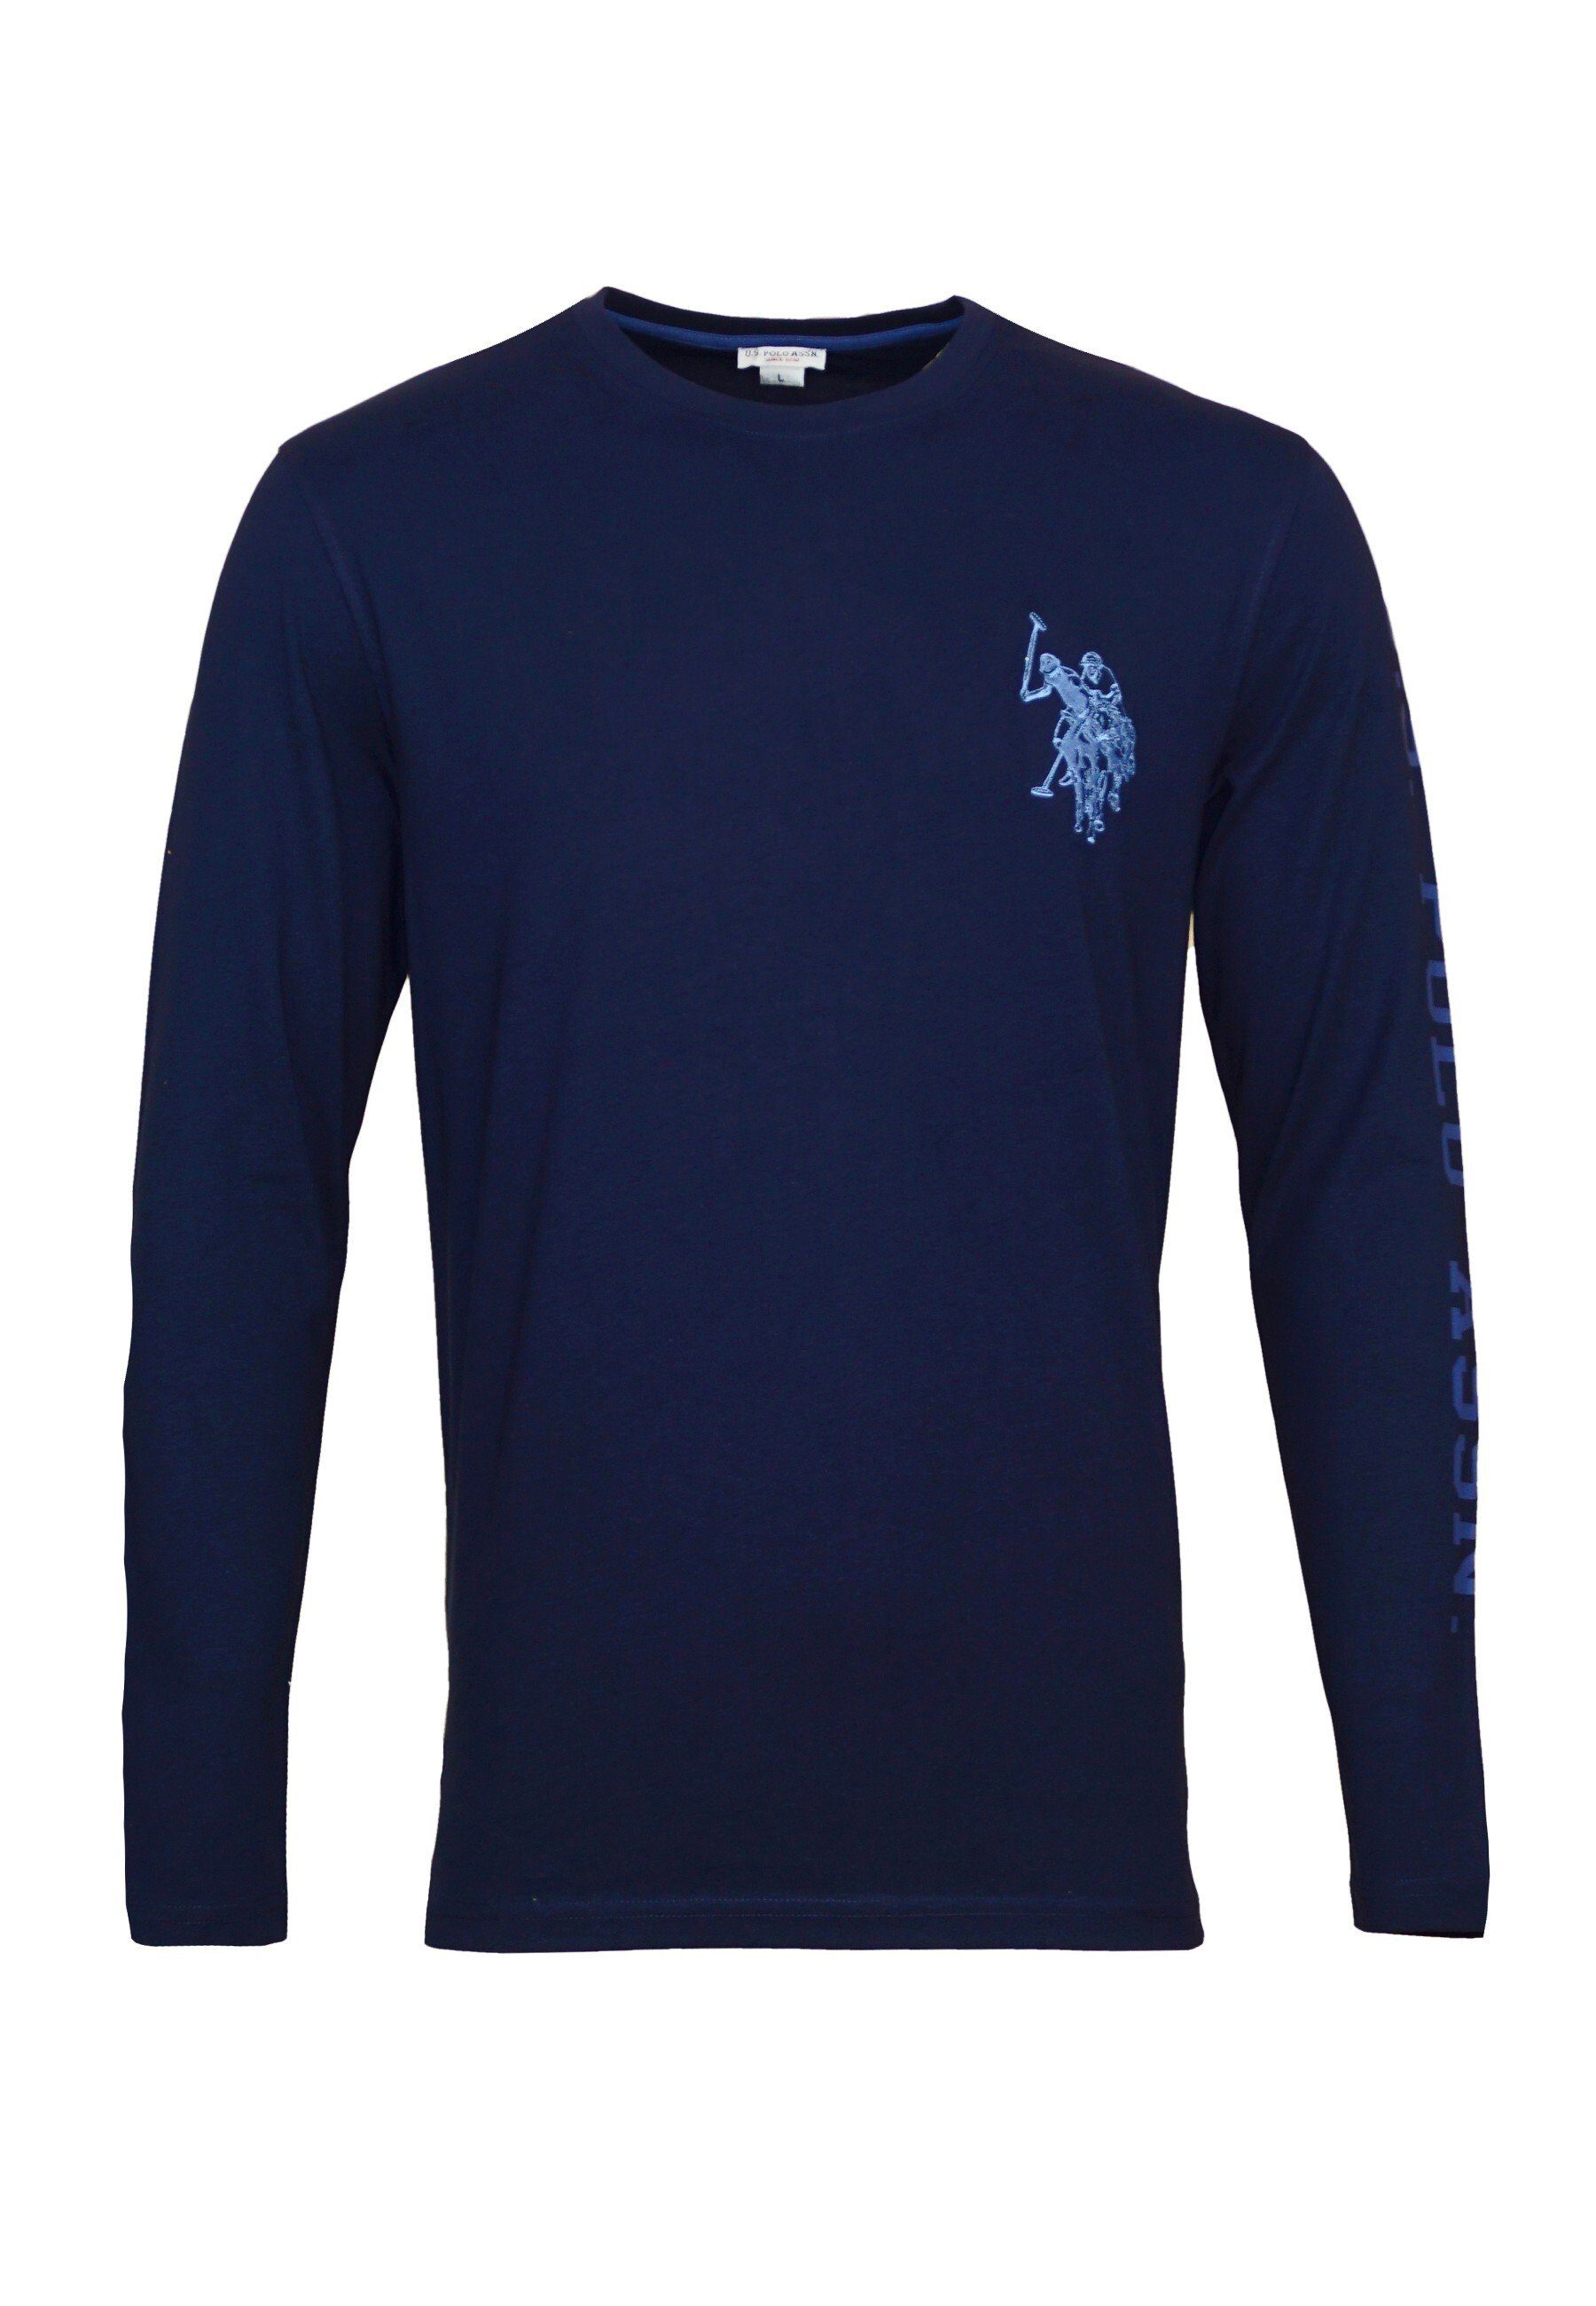 U.S. Polo Assn Longsleeve Shirt Longsleeve R-Neck dunkelblau